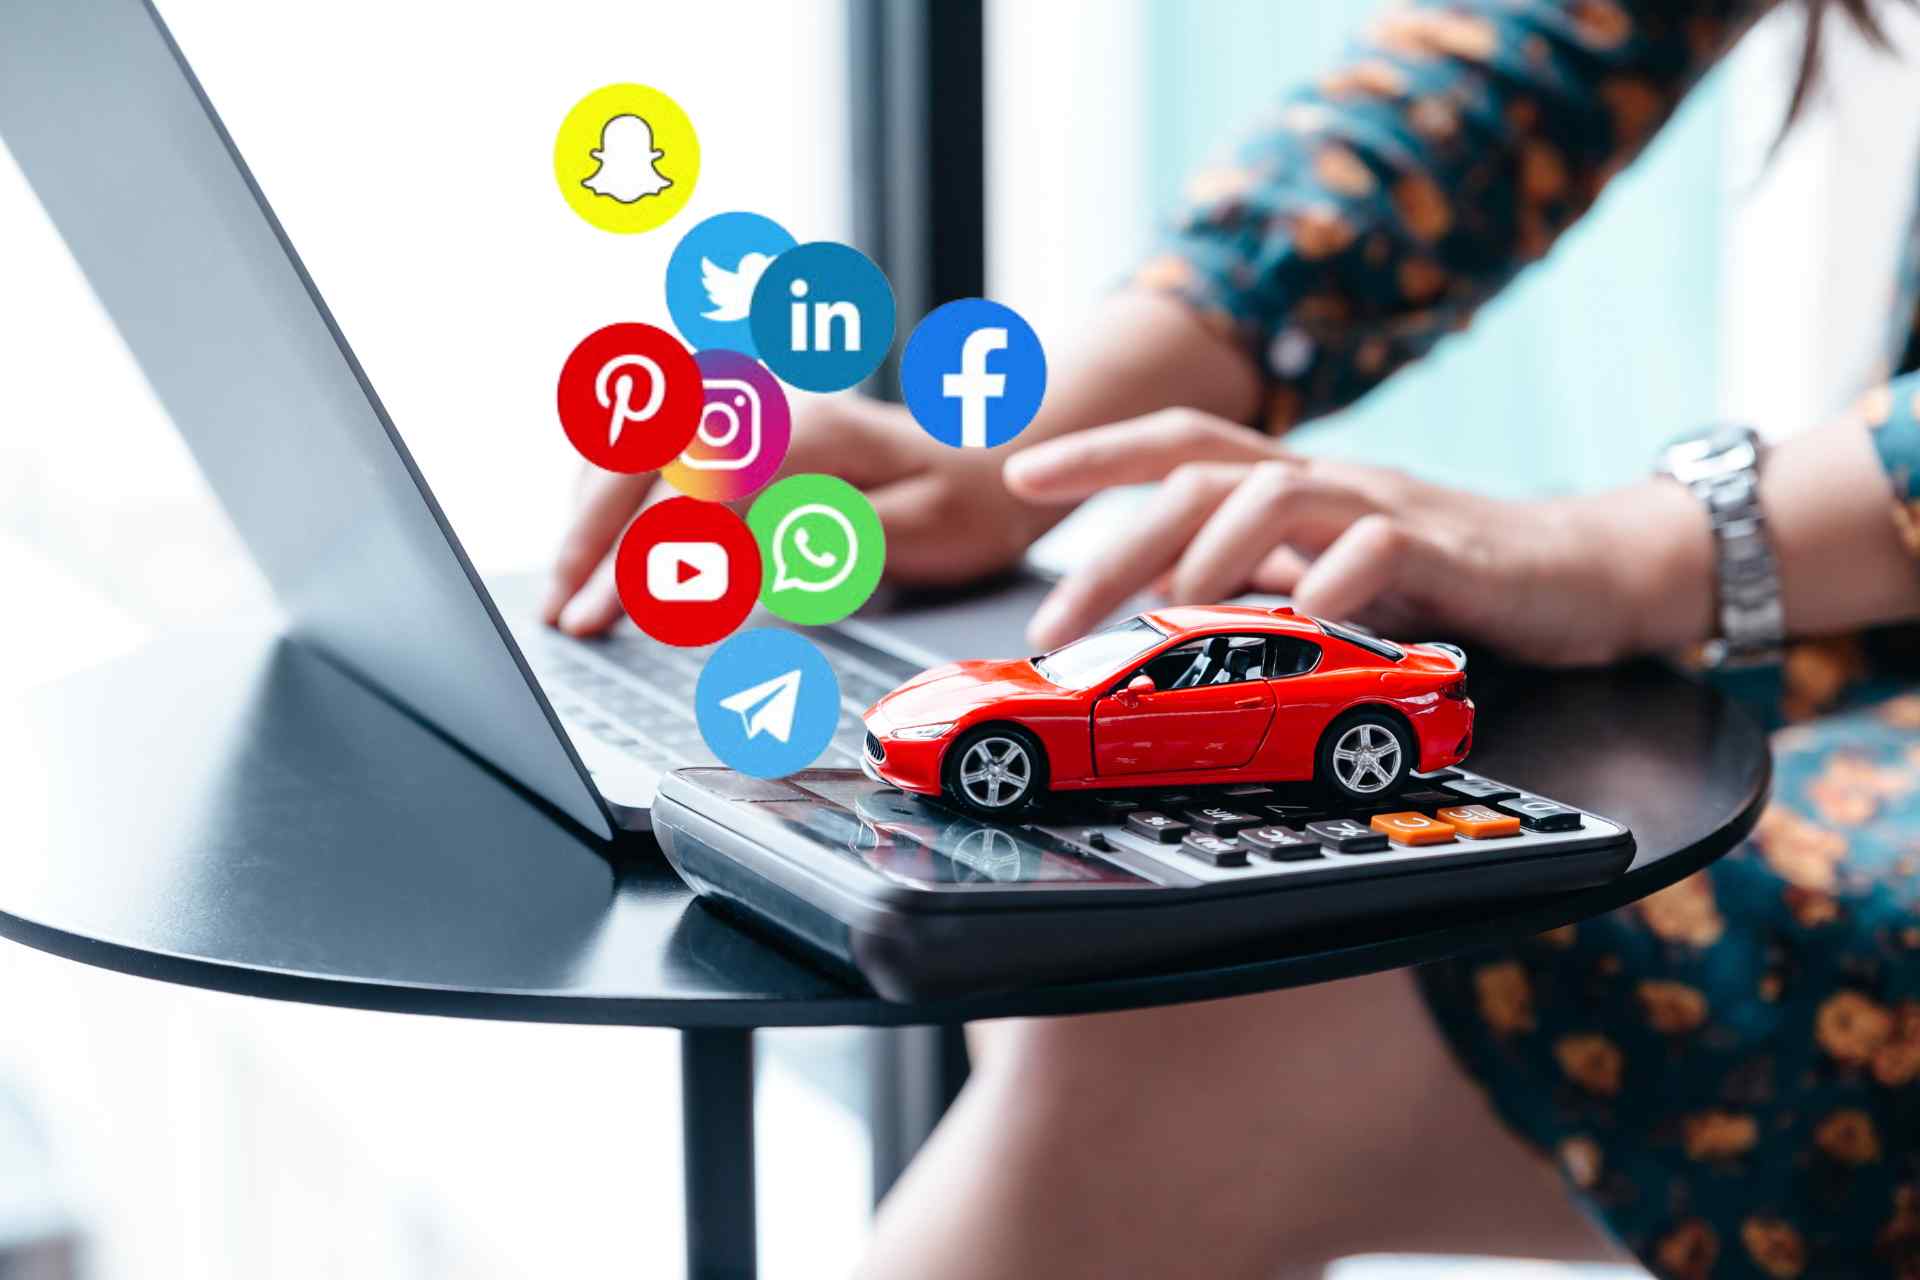 Social-Media-Crisis-Management-for-Automotive-Companies